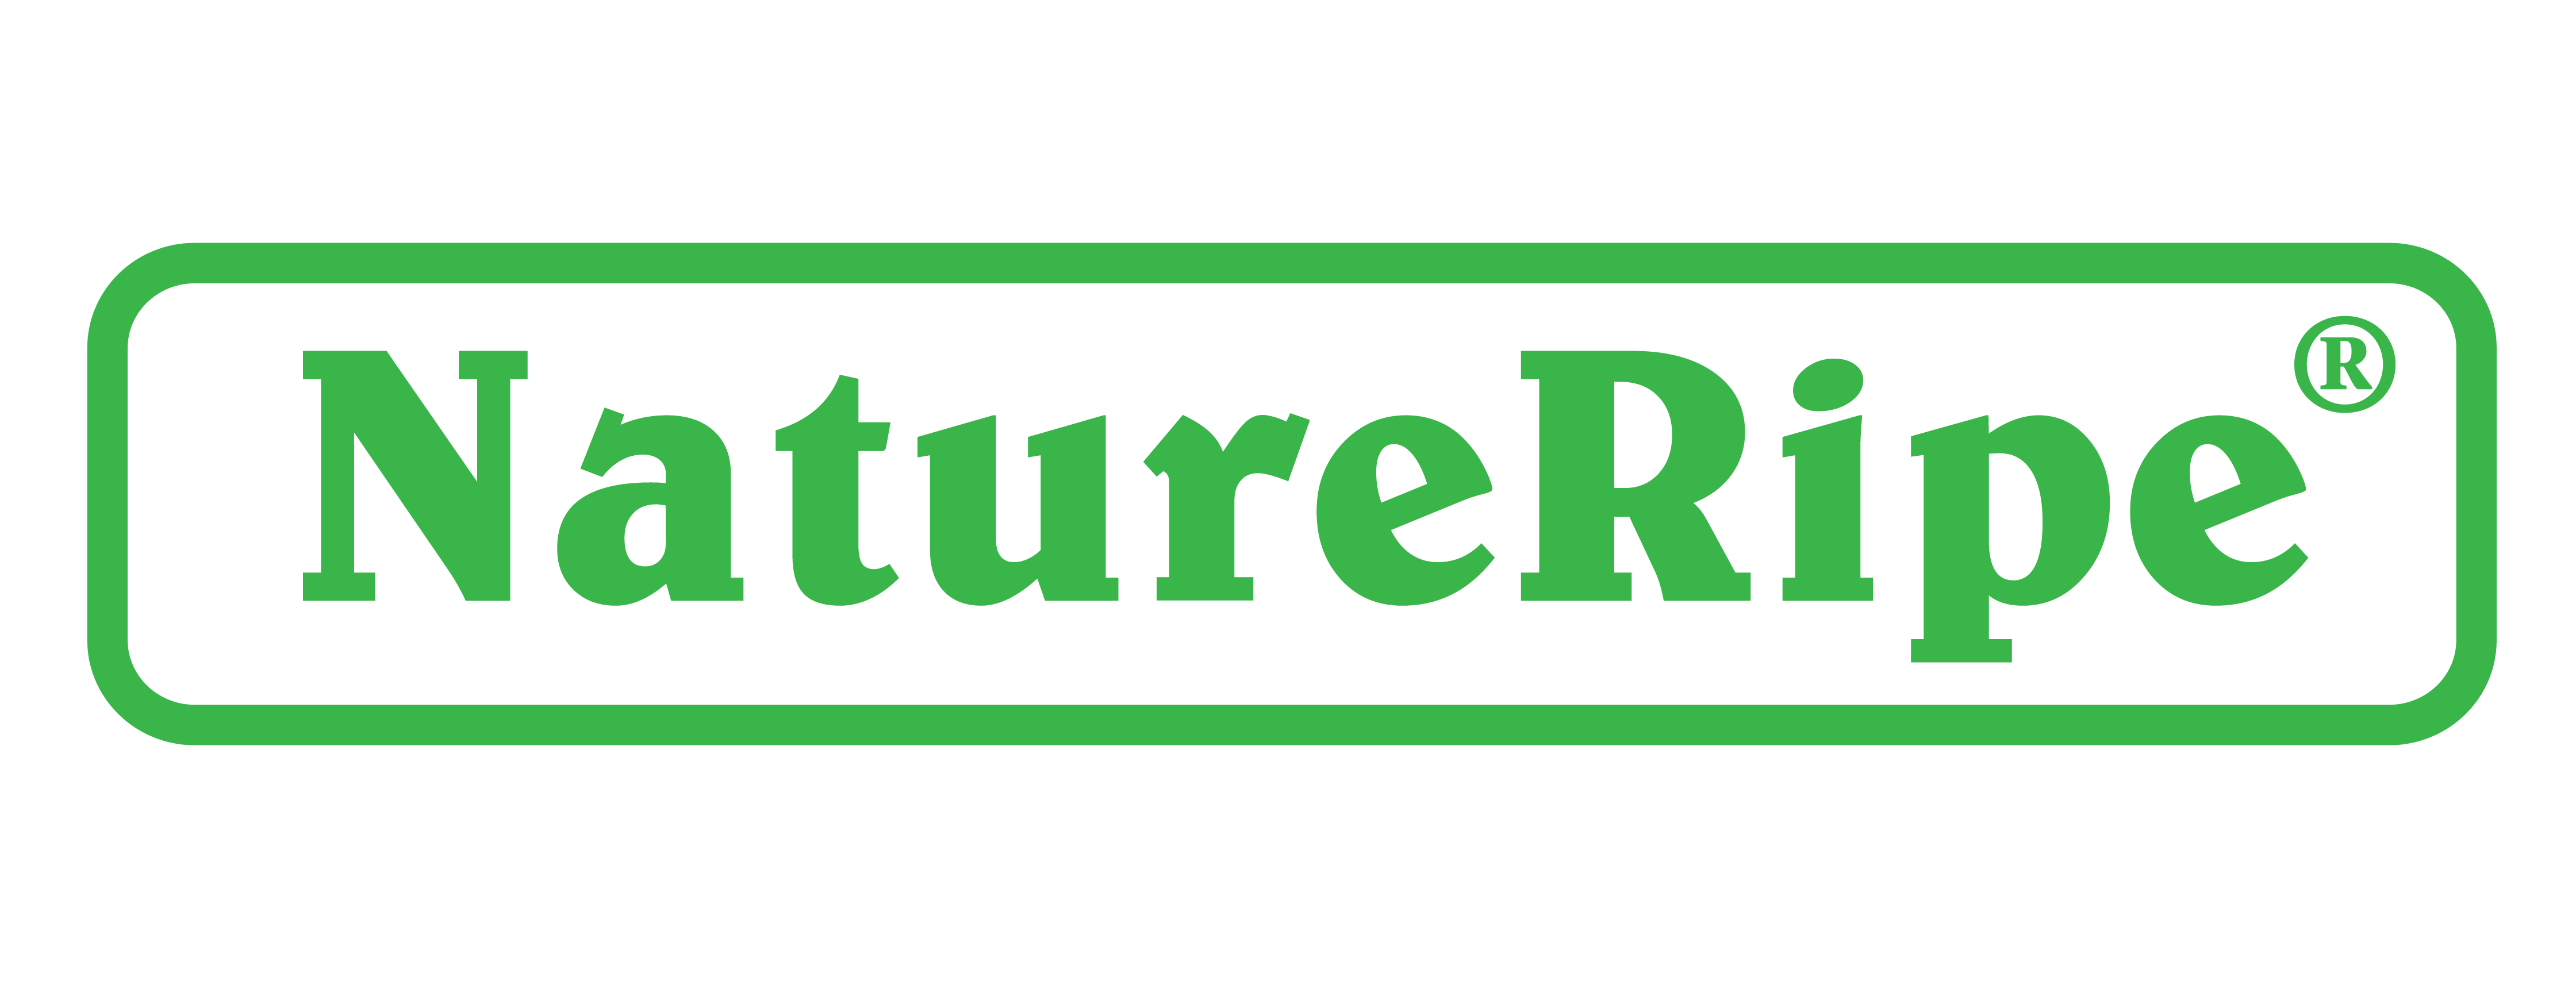 Natureripe logo image png